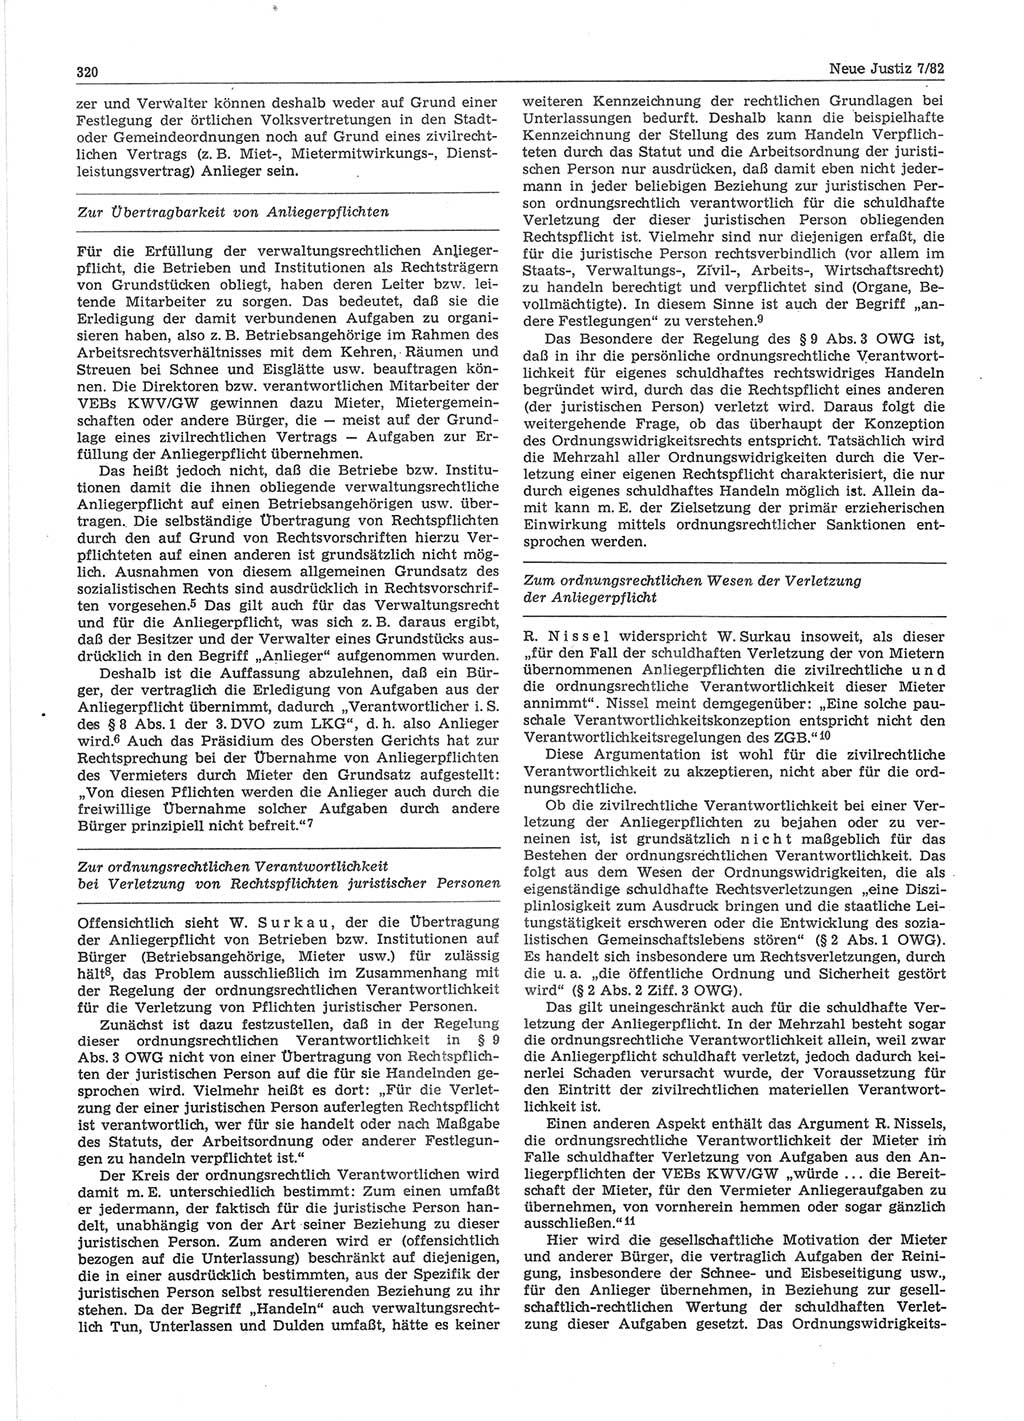 Neue Justiz (NJ), Zeitschrift für sozialistisches Recht und Gesetzlichkeit [Deutsche Demokratische Republik (DDR)], 36. Jahrgang 1982, Seite 320 (NJ DDR 1982, S. 320)